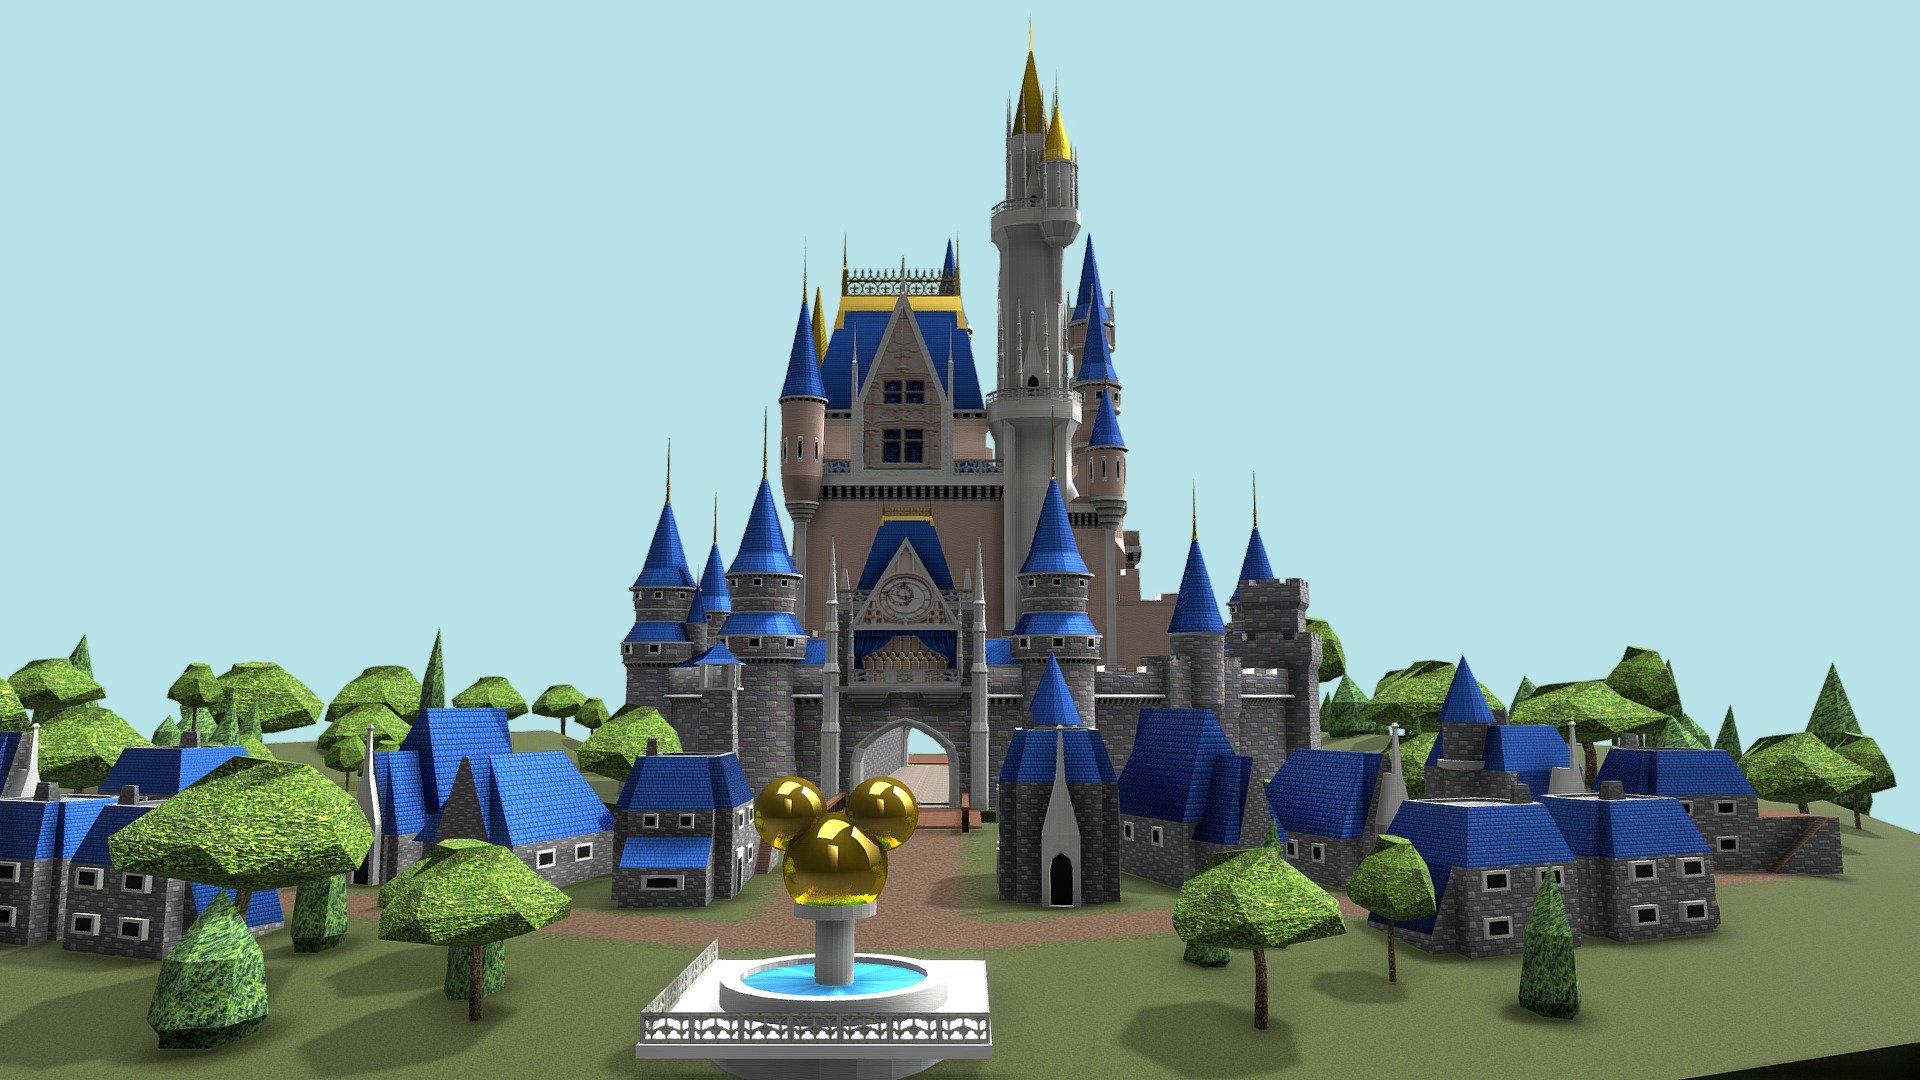 1 week project - 3P_Proj4_Joseph_St_Arnault_Disney_Castle - 3D model by JosephStA 3d model